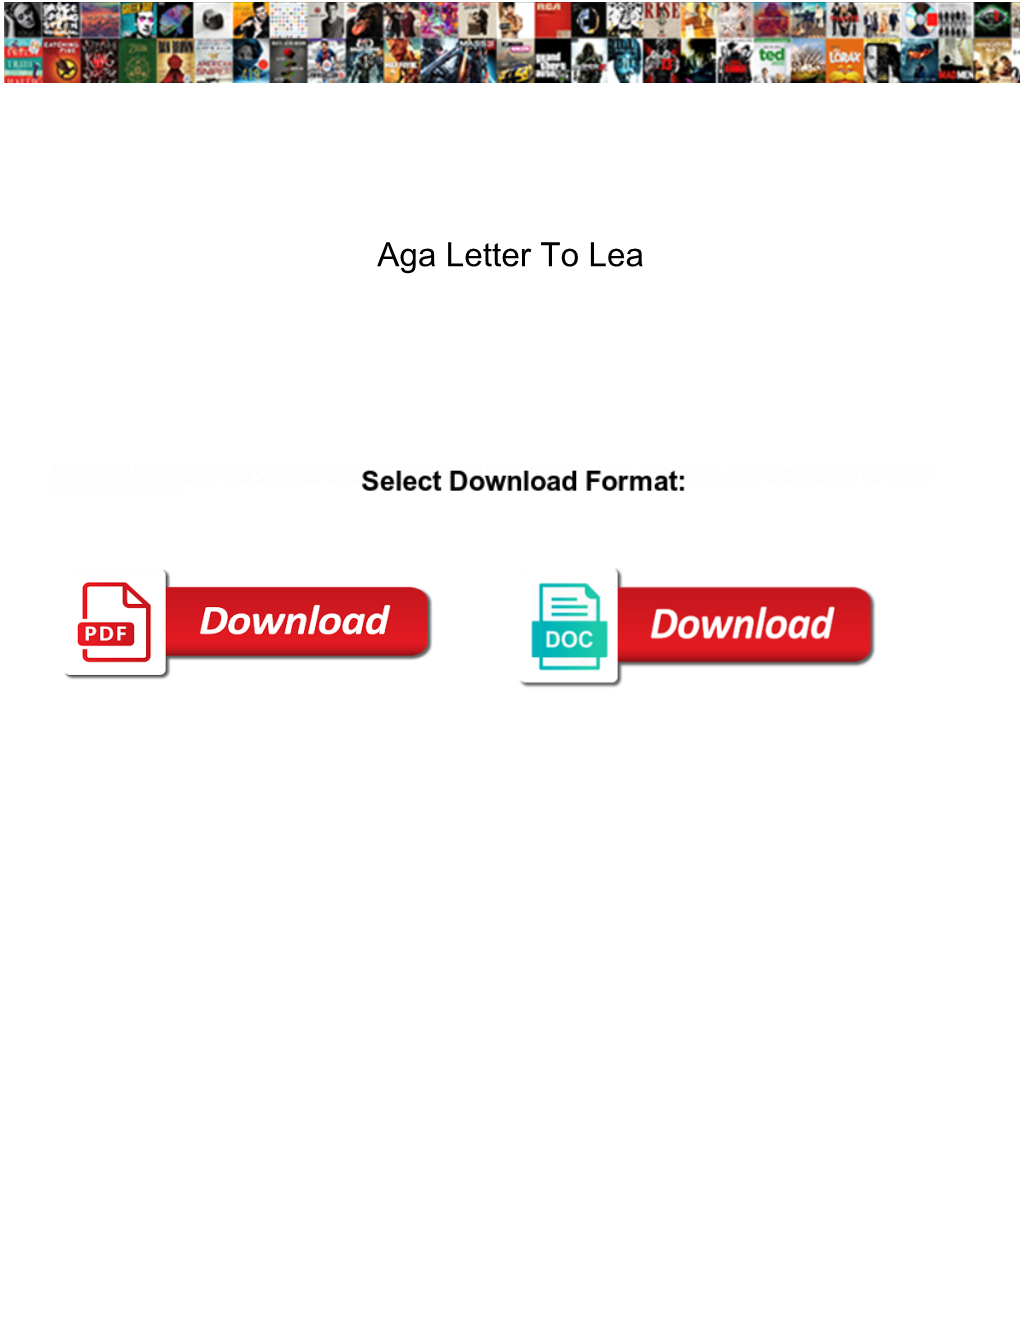 Aga Letter to Lea